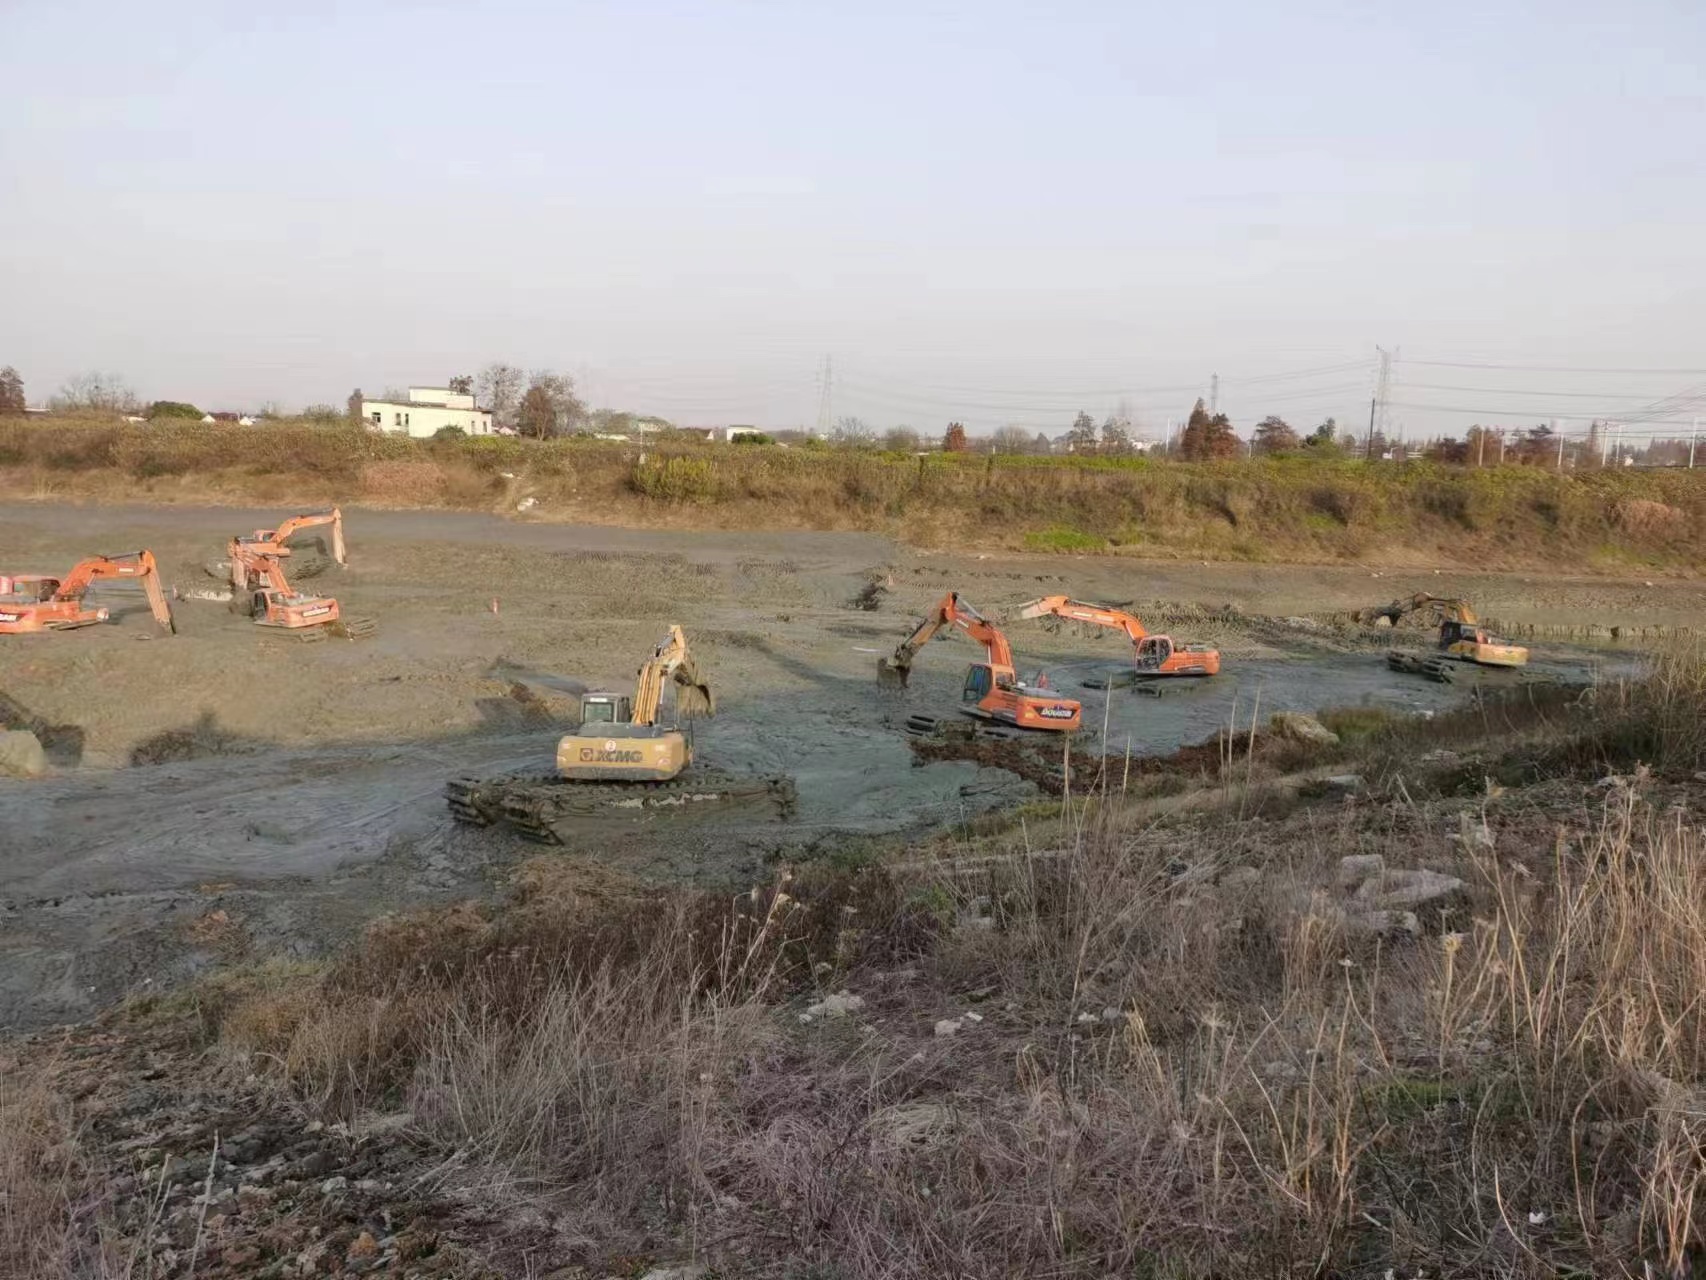 梅州浮船挖机租赁沼泽,水陆两用挖掘机出租一站式服务